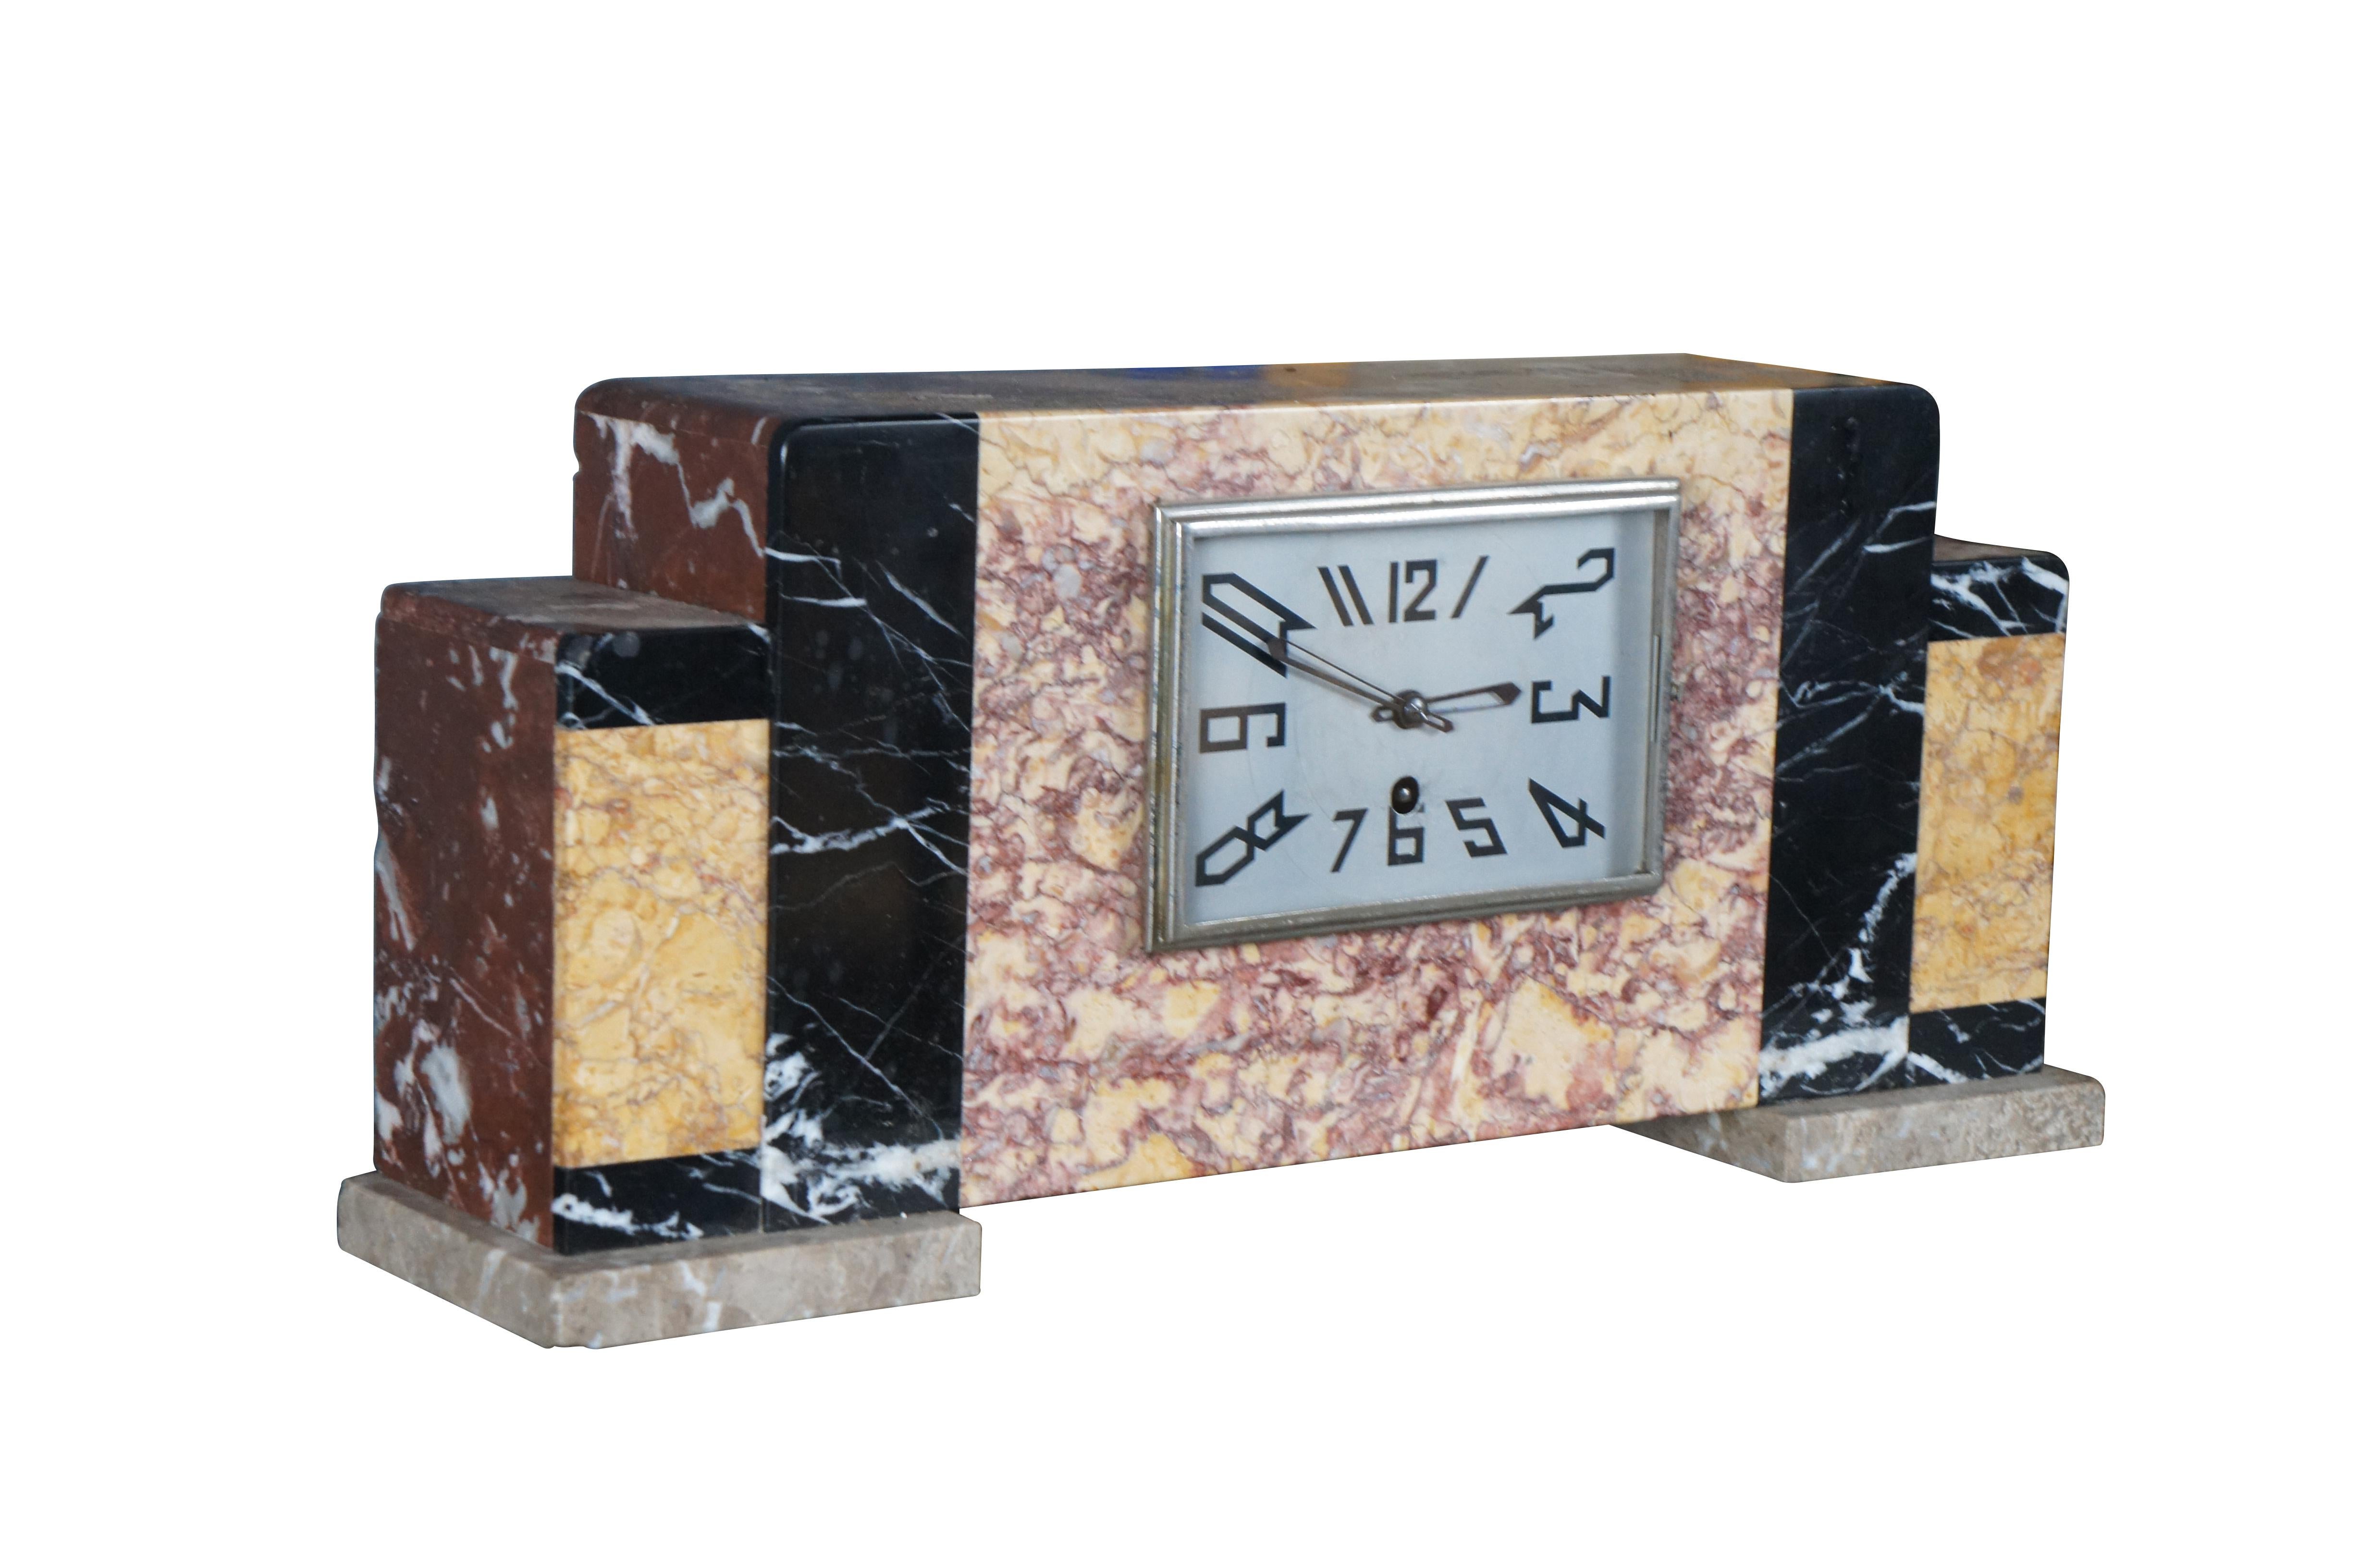 Horloge de cheminée ancienne de style Art Déco. Elle présente quatre types de pierre différents, le marbre Royal Rouge étant au premier plan. Parfait pour être exposé sur un bureau, une table ou une bibliothèque.

Dimensions :
18.5